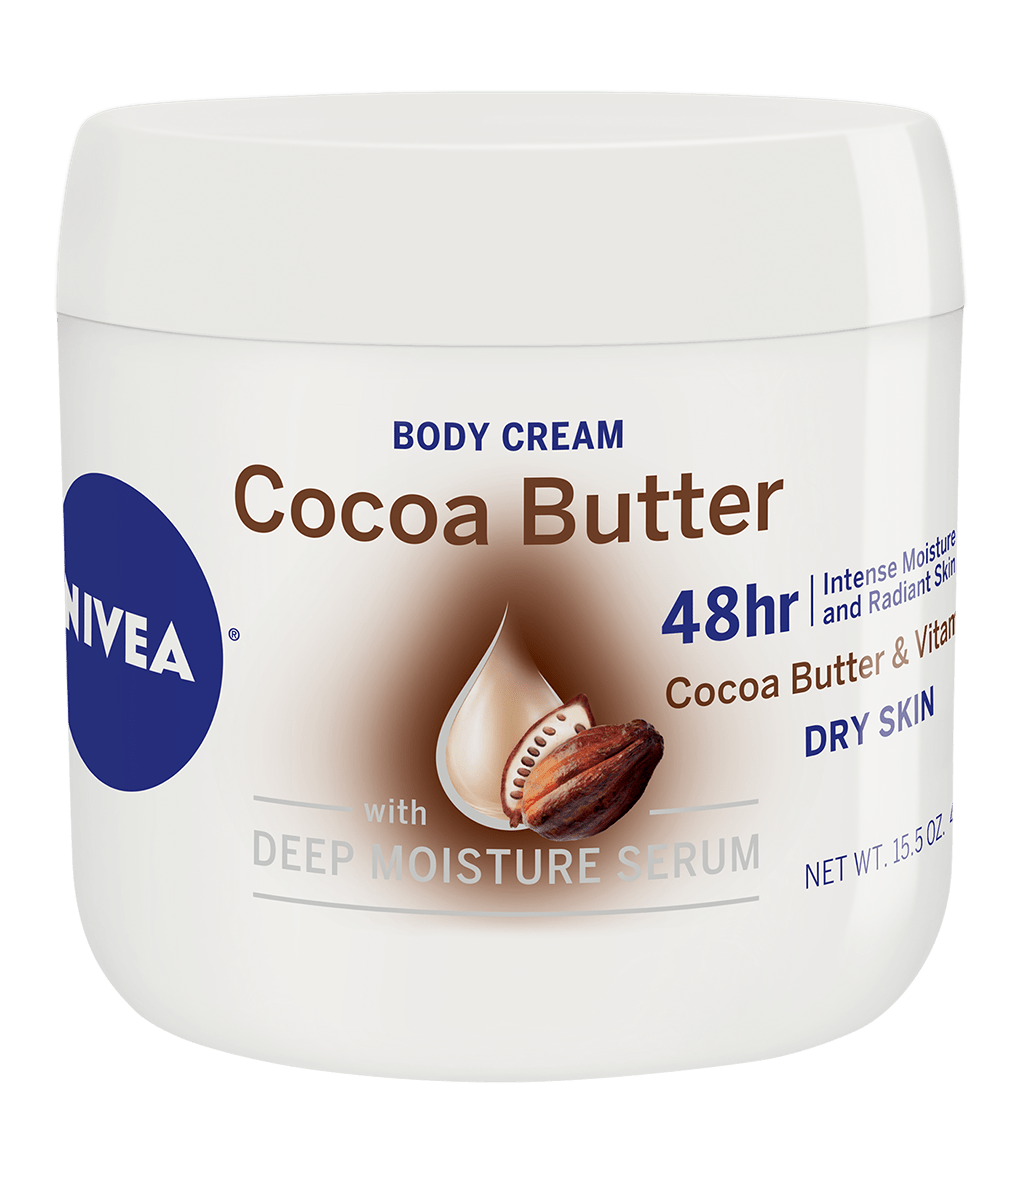 nivea cocoa butter cream uses